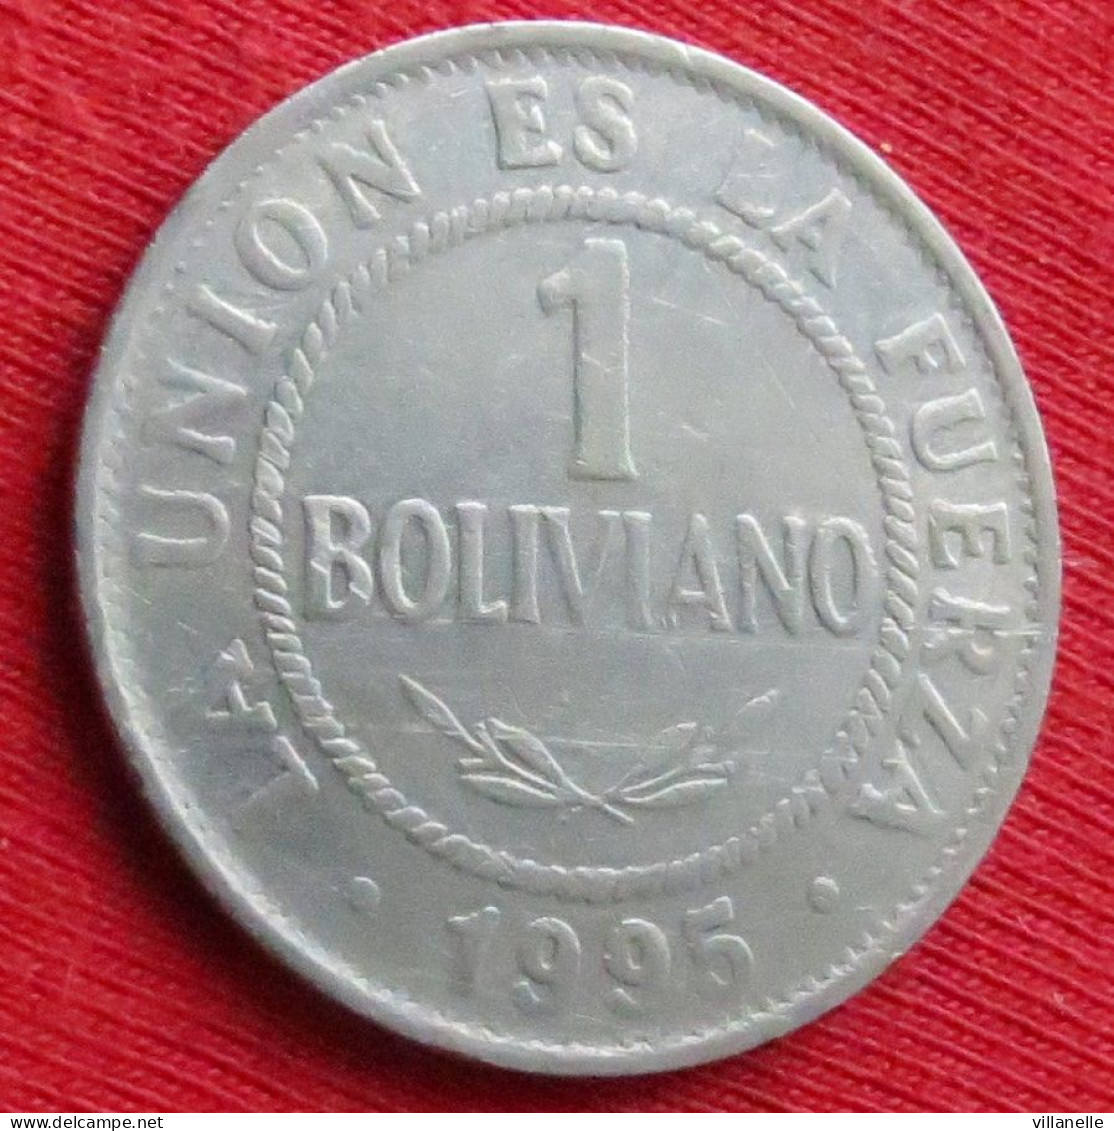 Bolivia 1 Boliviano 1995 Bolivie W ºº - Bolivia